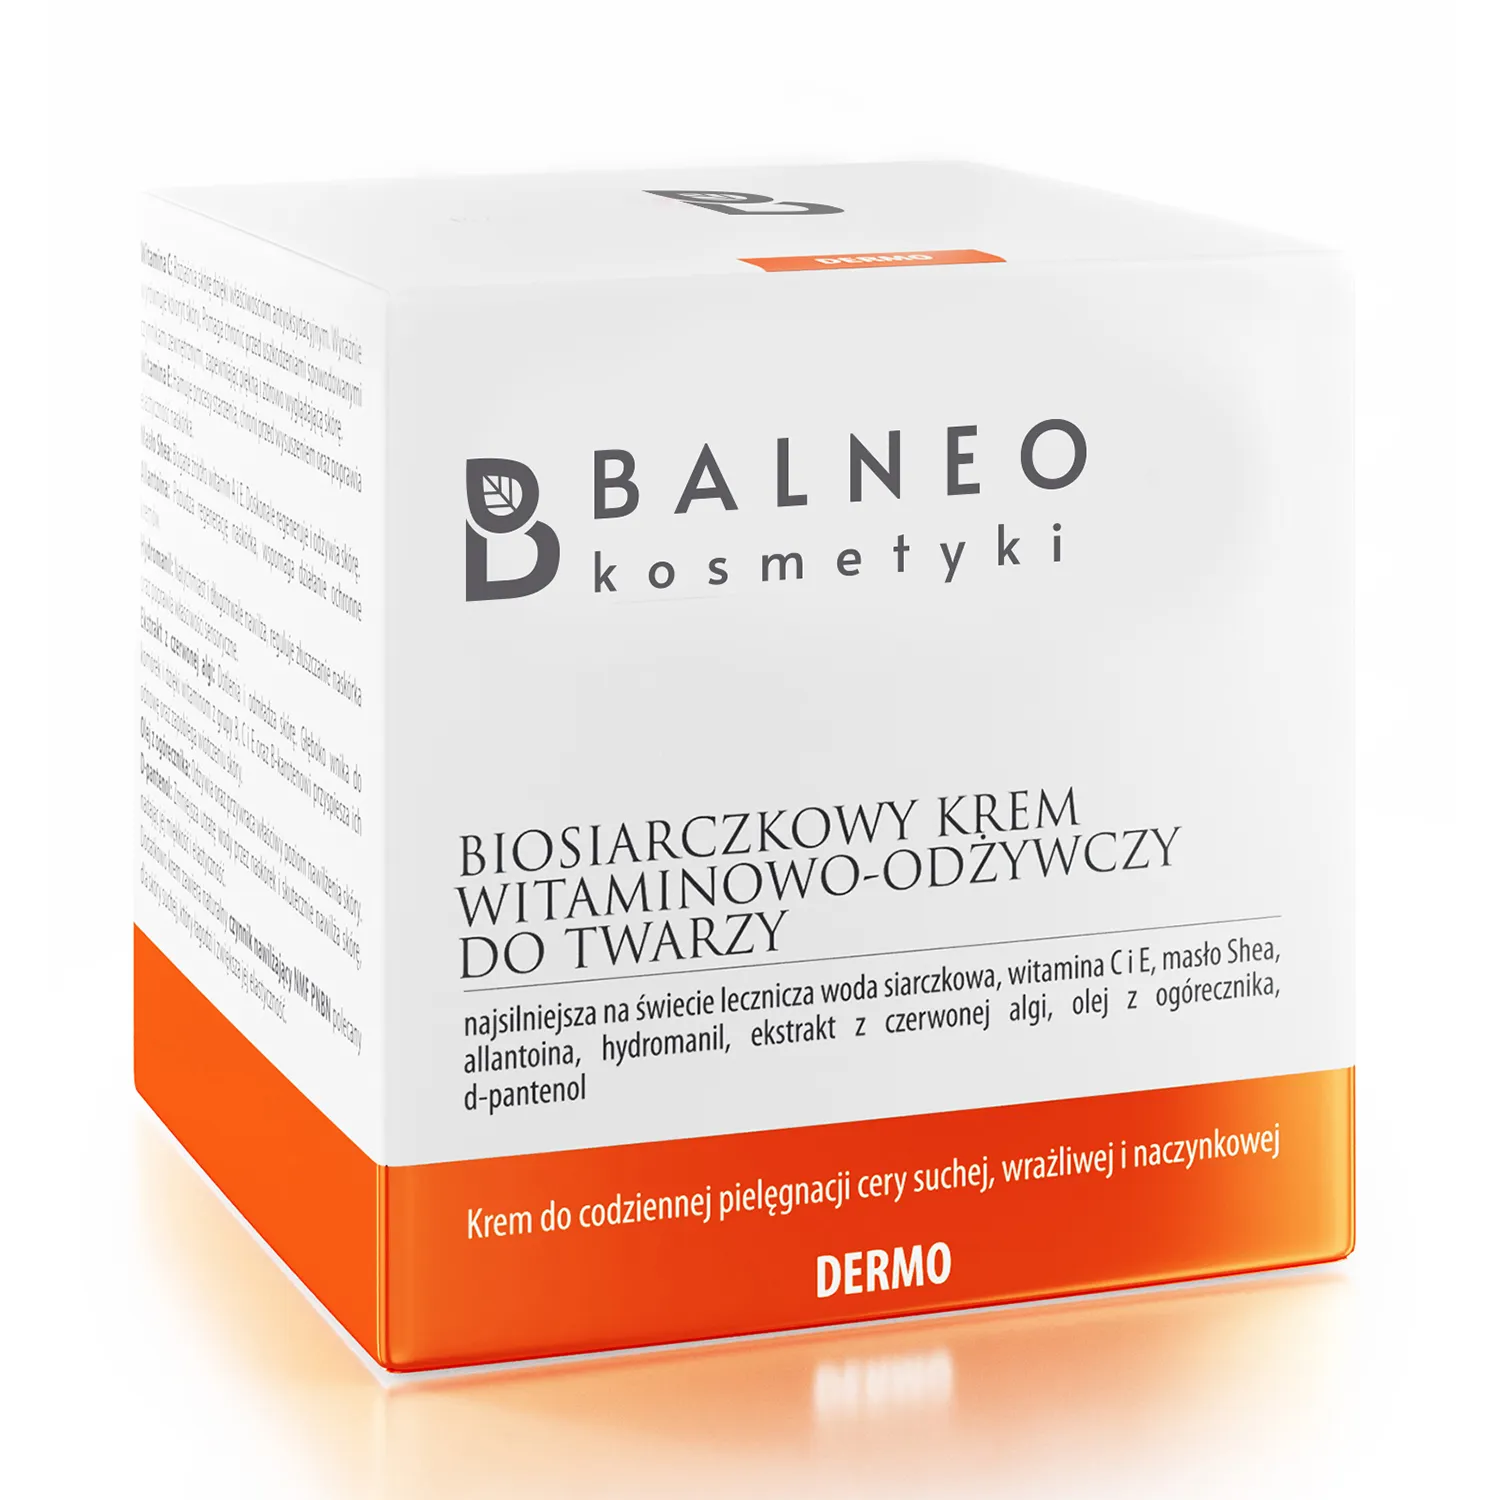 Balneokosmetyki biosiarczkowy krem do twarzy witaminowo-odżywczy, 50 ml